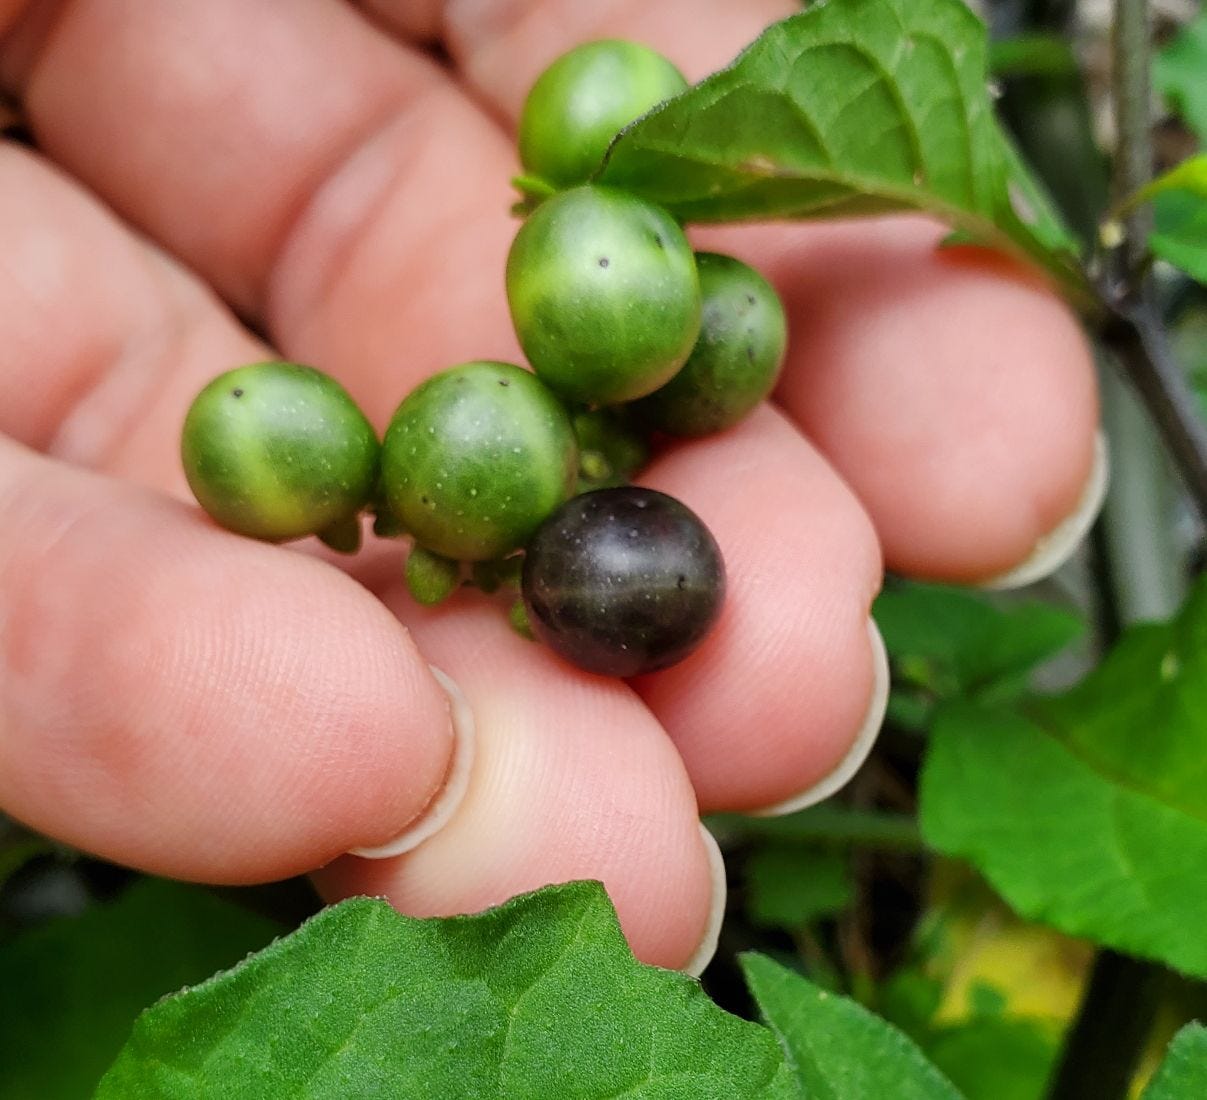 Solanum americanum [berries] 20221231_164920 sml.jpg